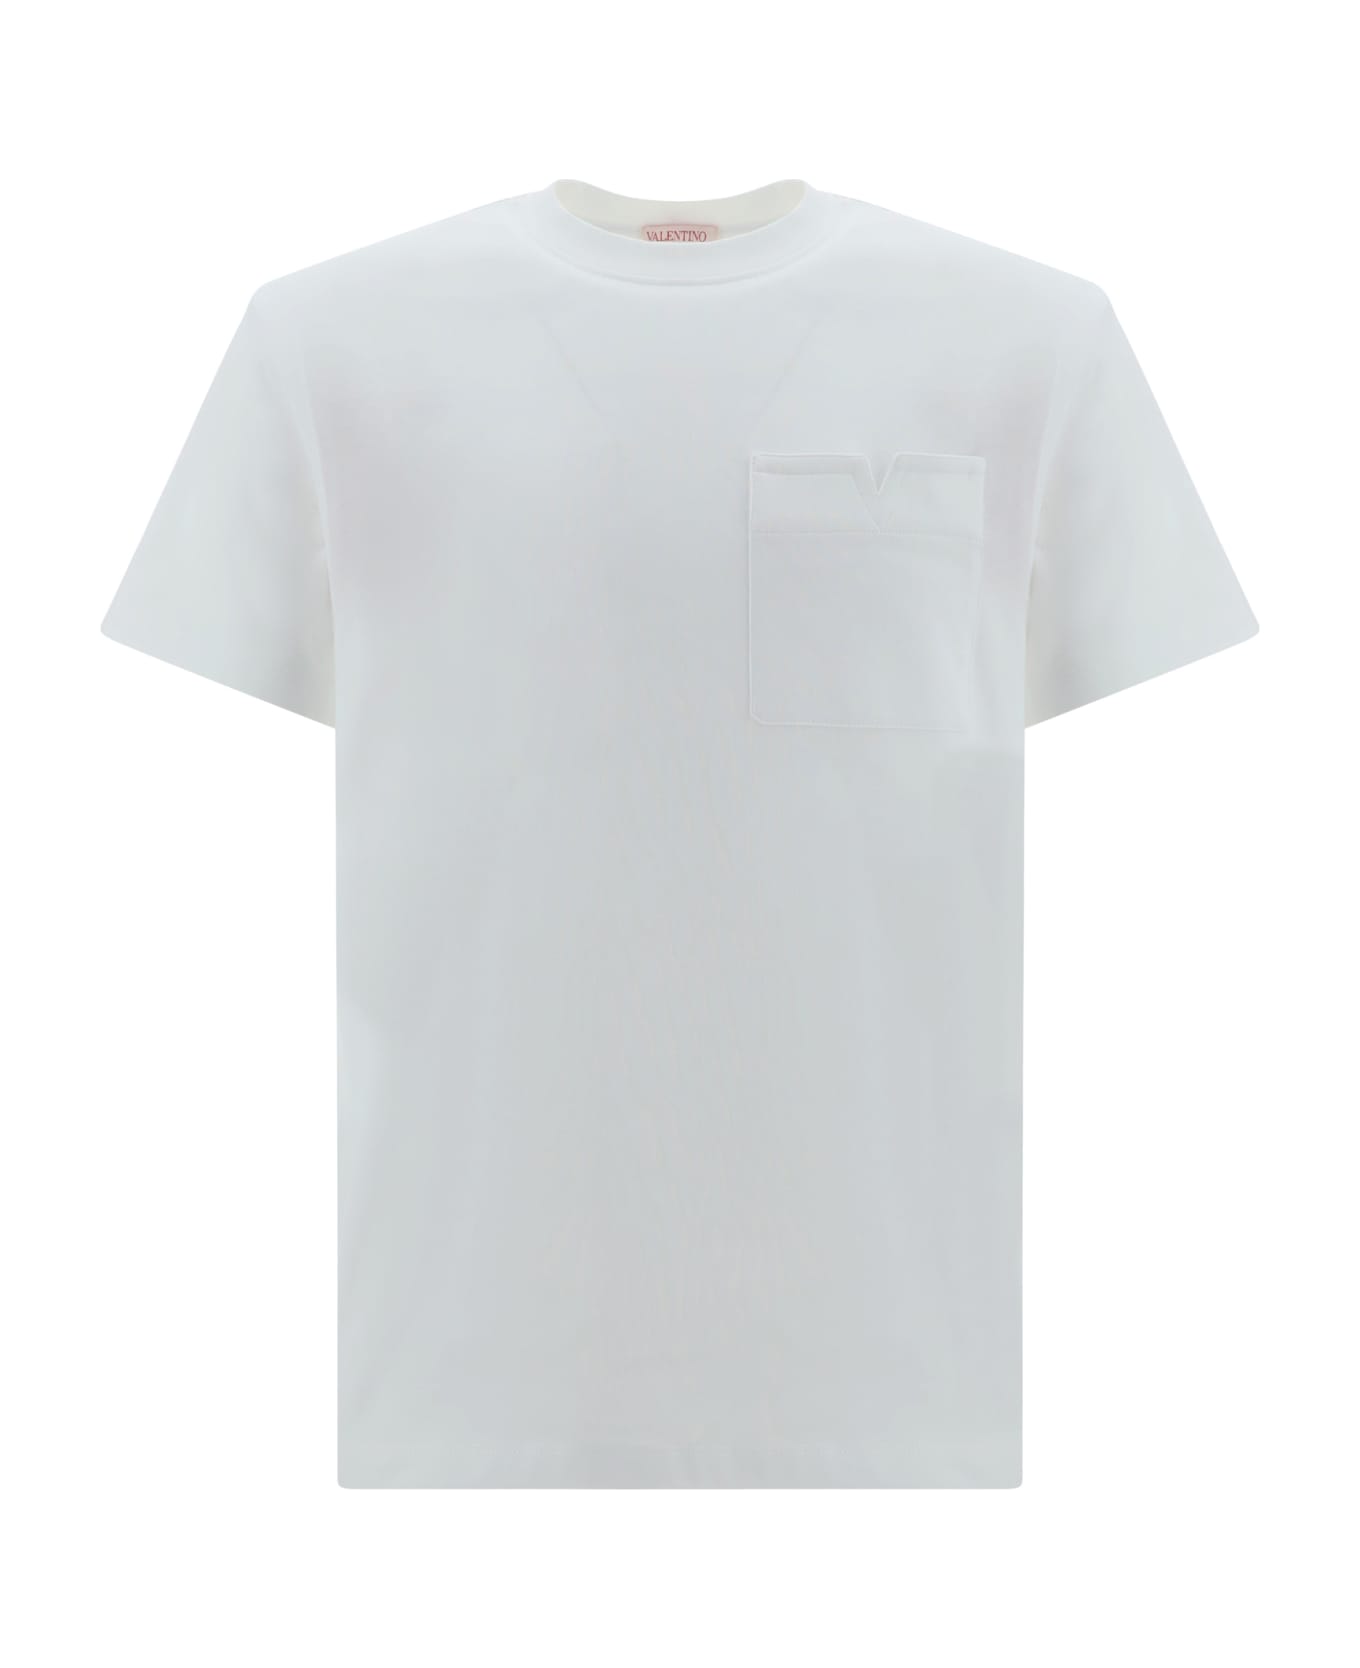 Valentino T-shirt - White シャツ